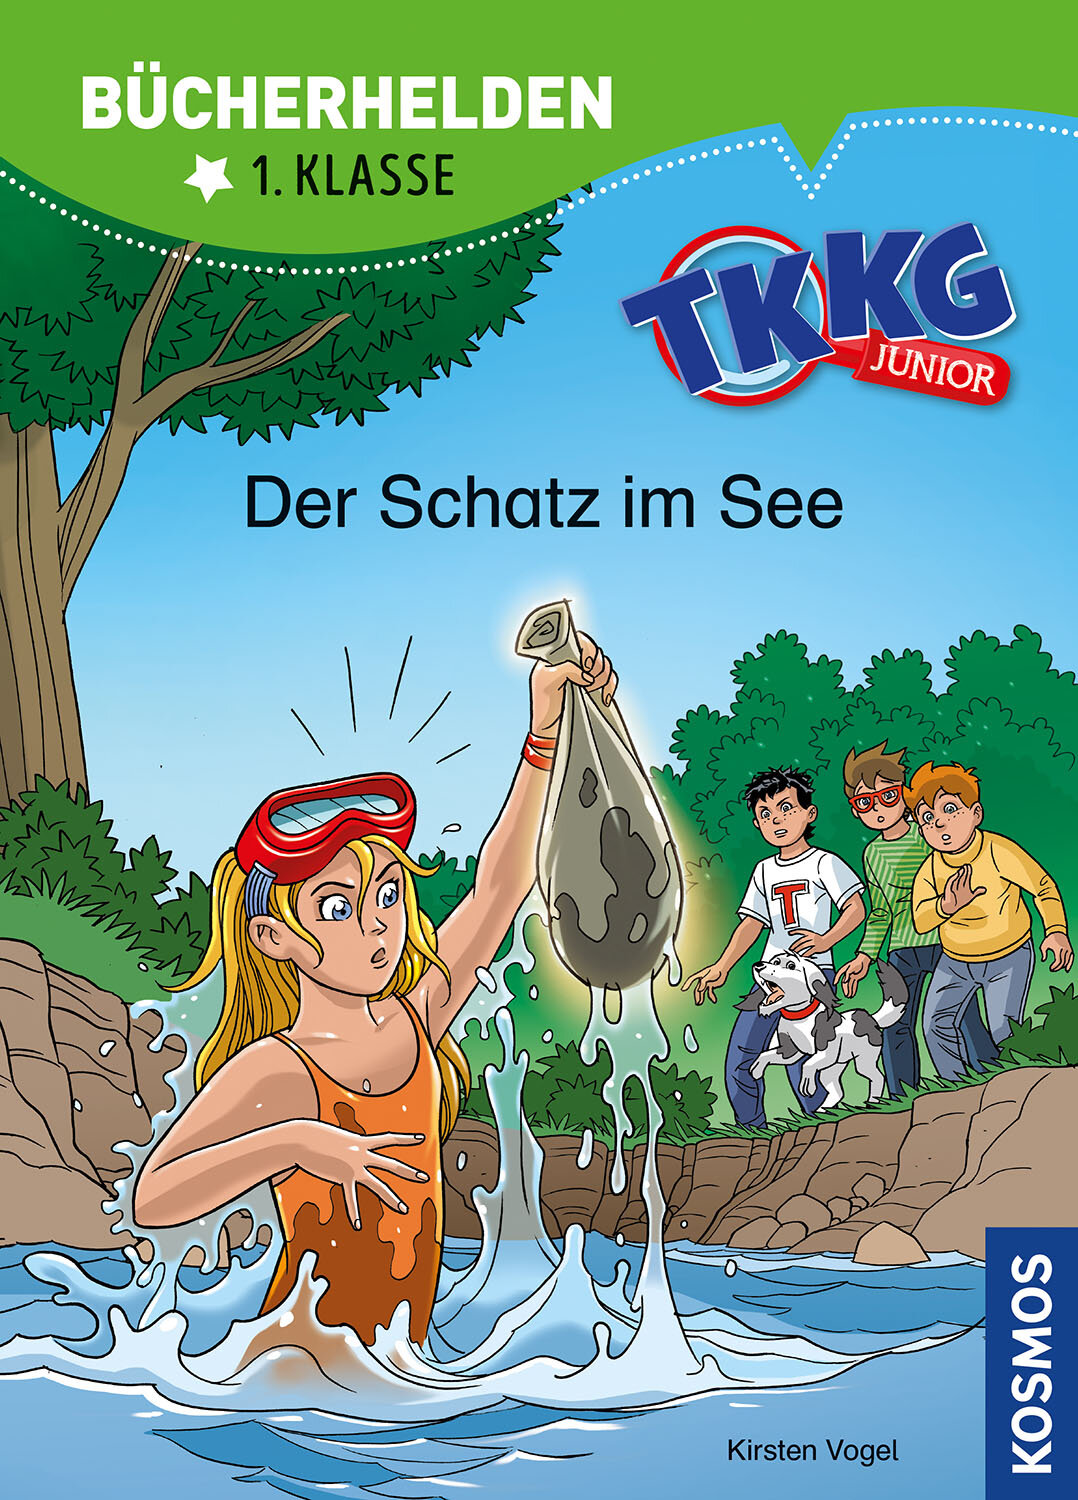 TKKG Junior  Bücherhelden 1. Klasse  Der Schatz im See